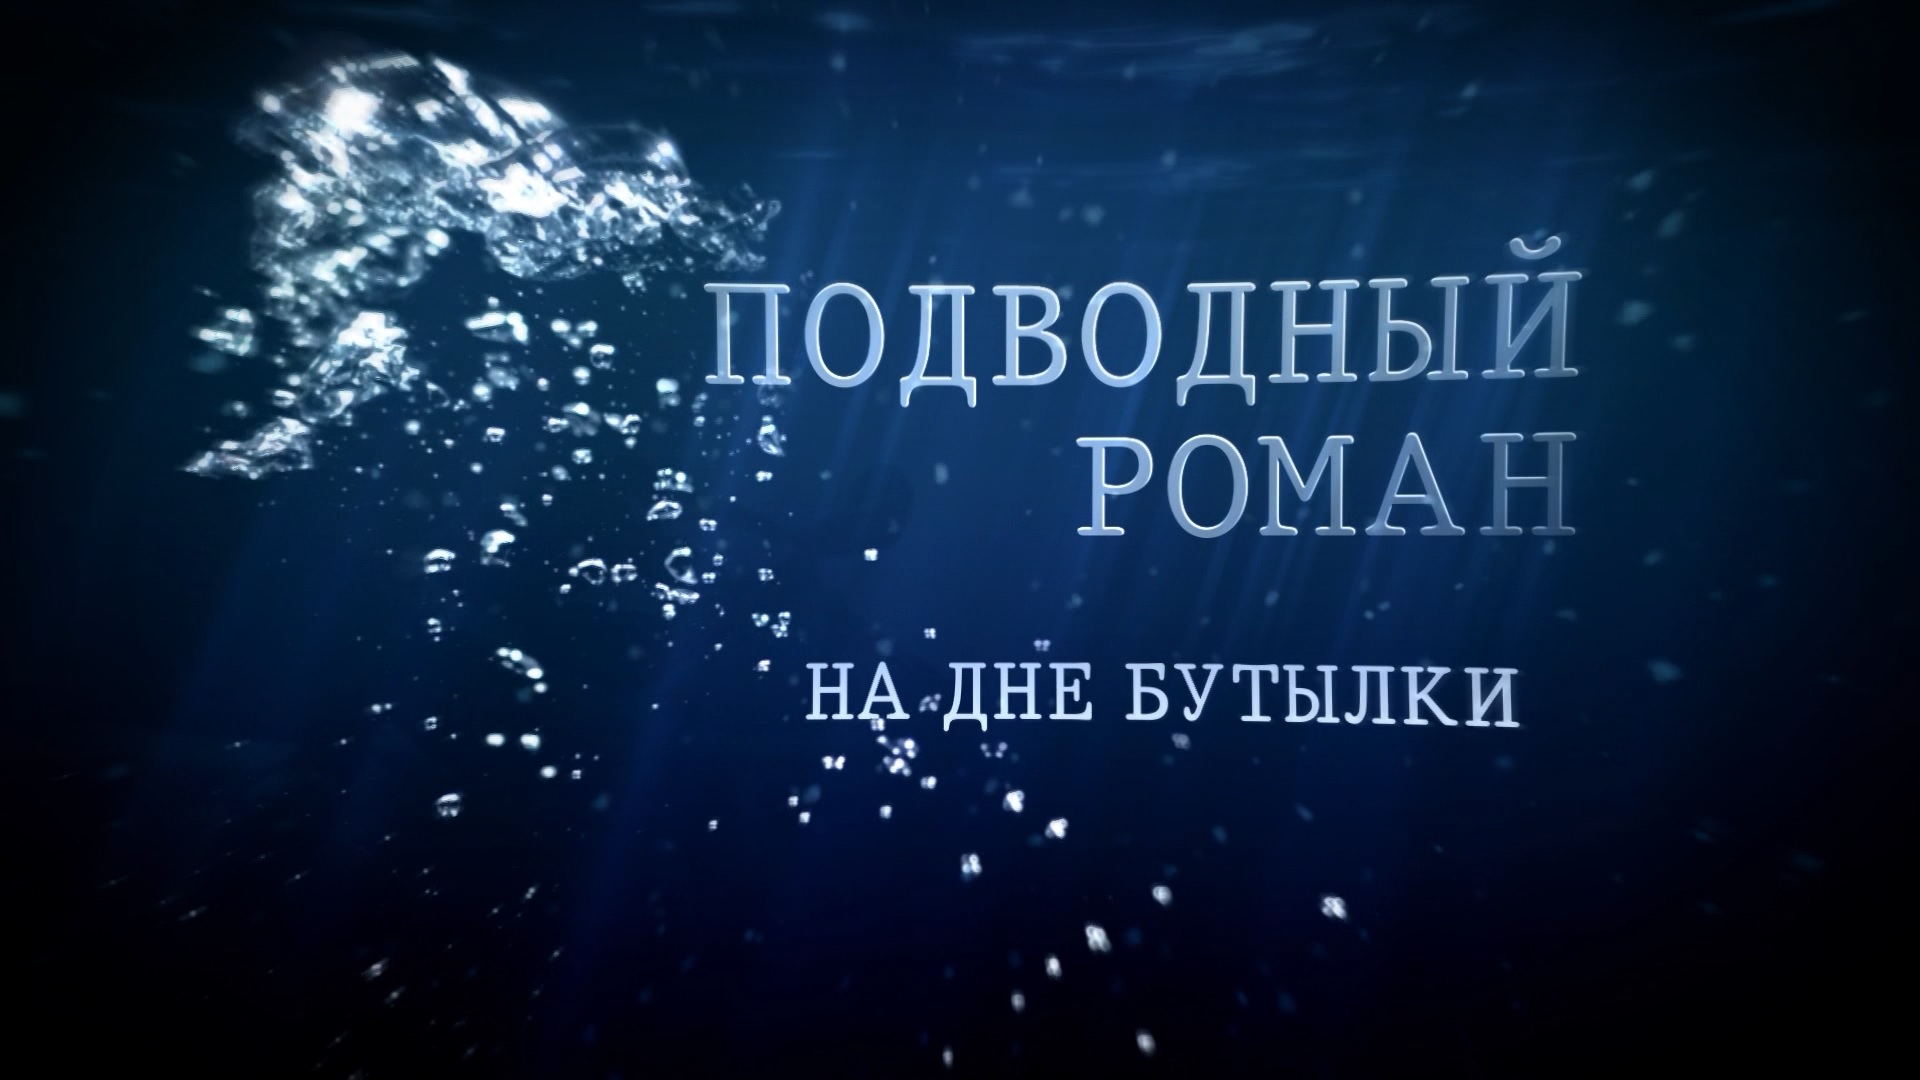 Подводный роман НА ДНЕ БУТЫЛКИ